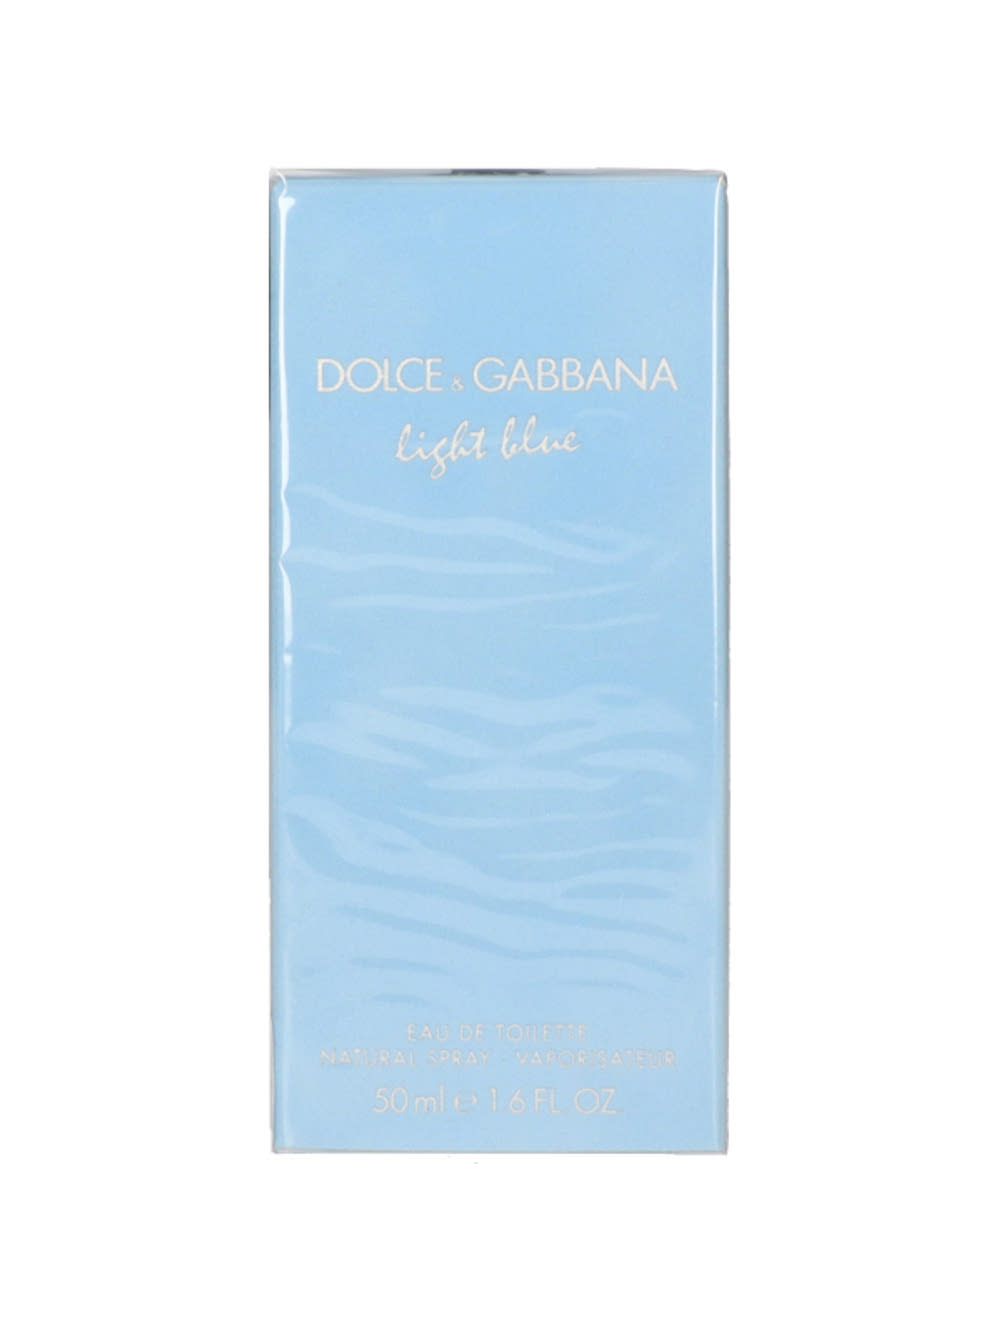 Dolce & Gabbana Light Blue noi Eau de Toilette - 50 ml